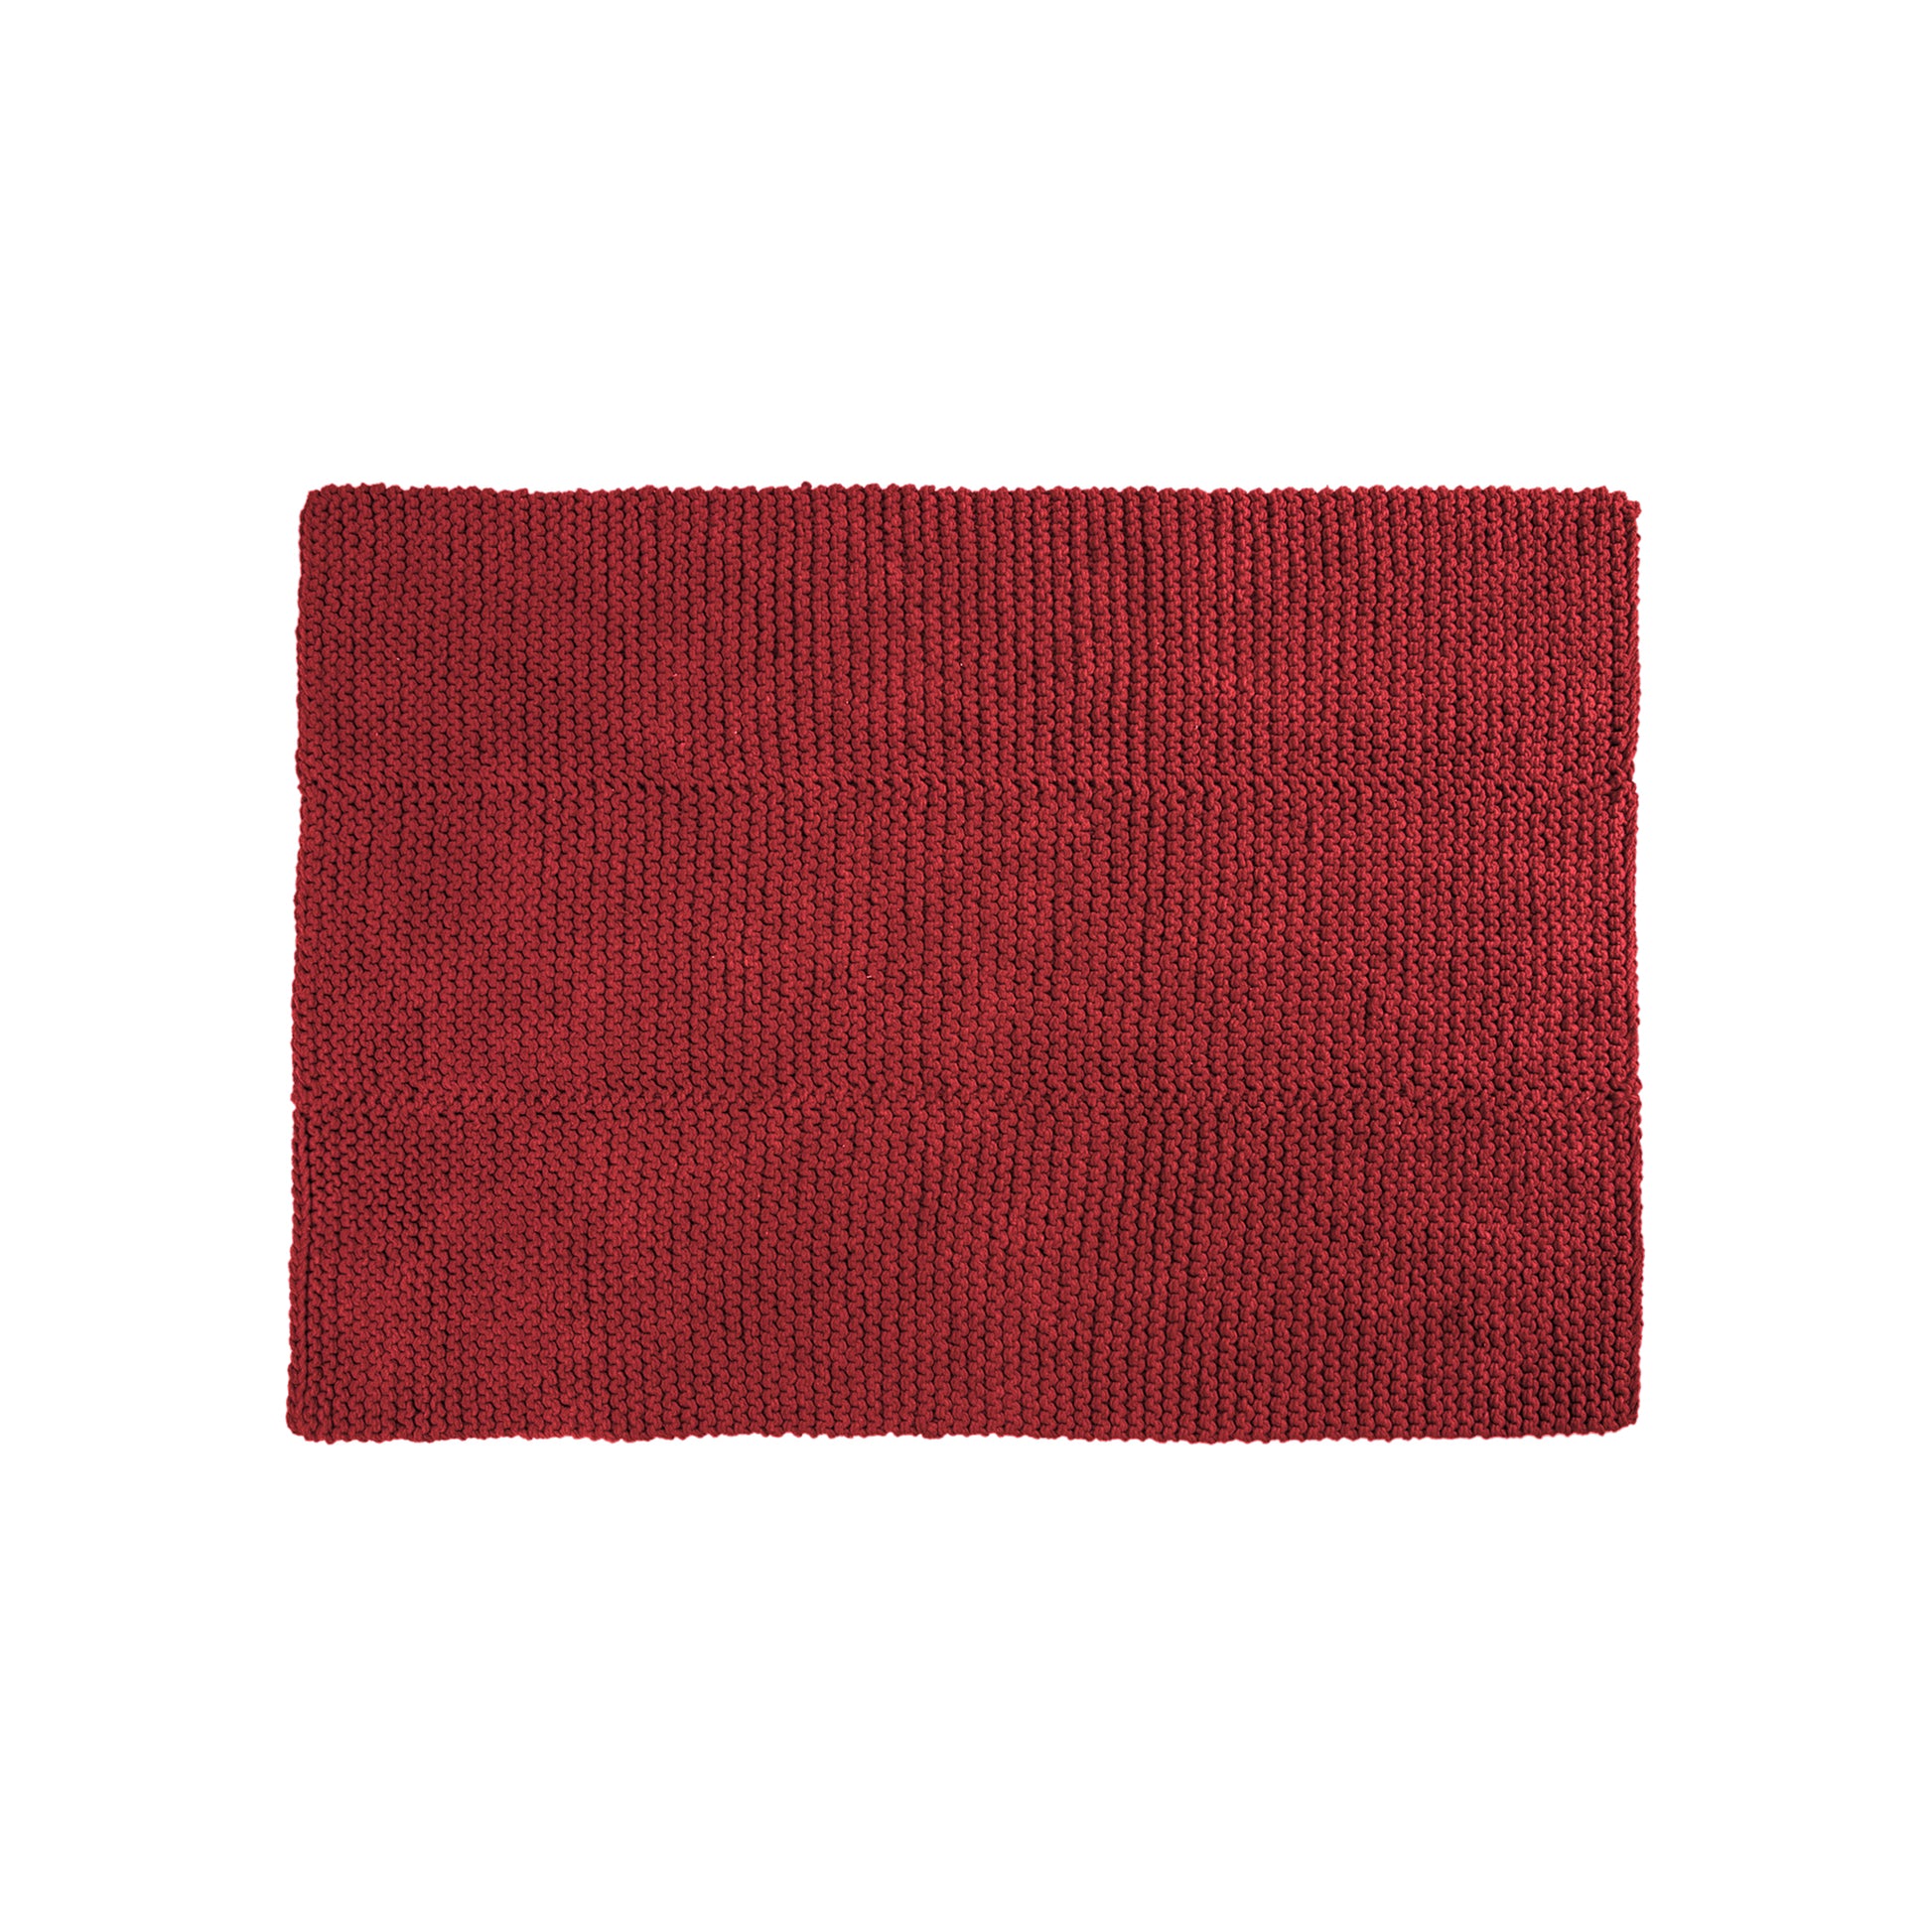 Tapete em tricô artesanal Vermelho, com fio 100% algodão. Dimensões: Largura - 150cm; Comprimento - 200cm. 